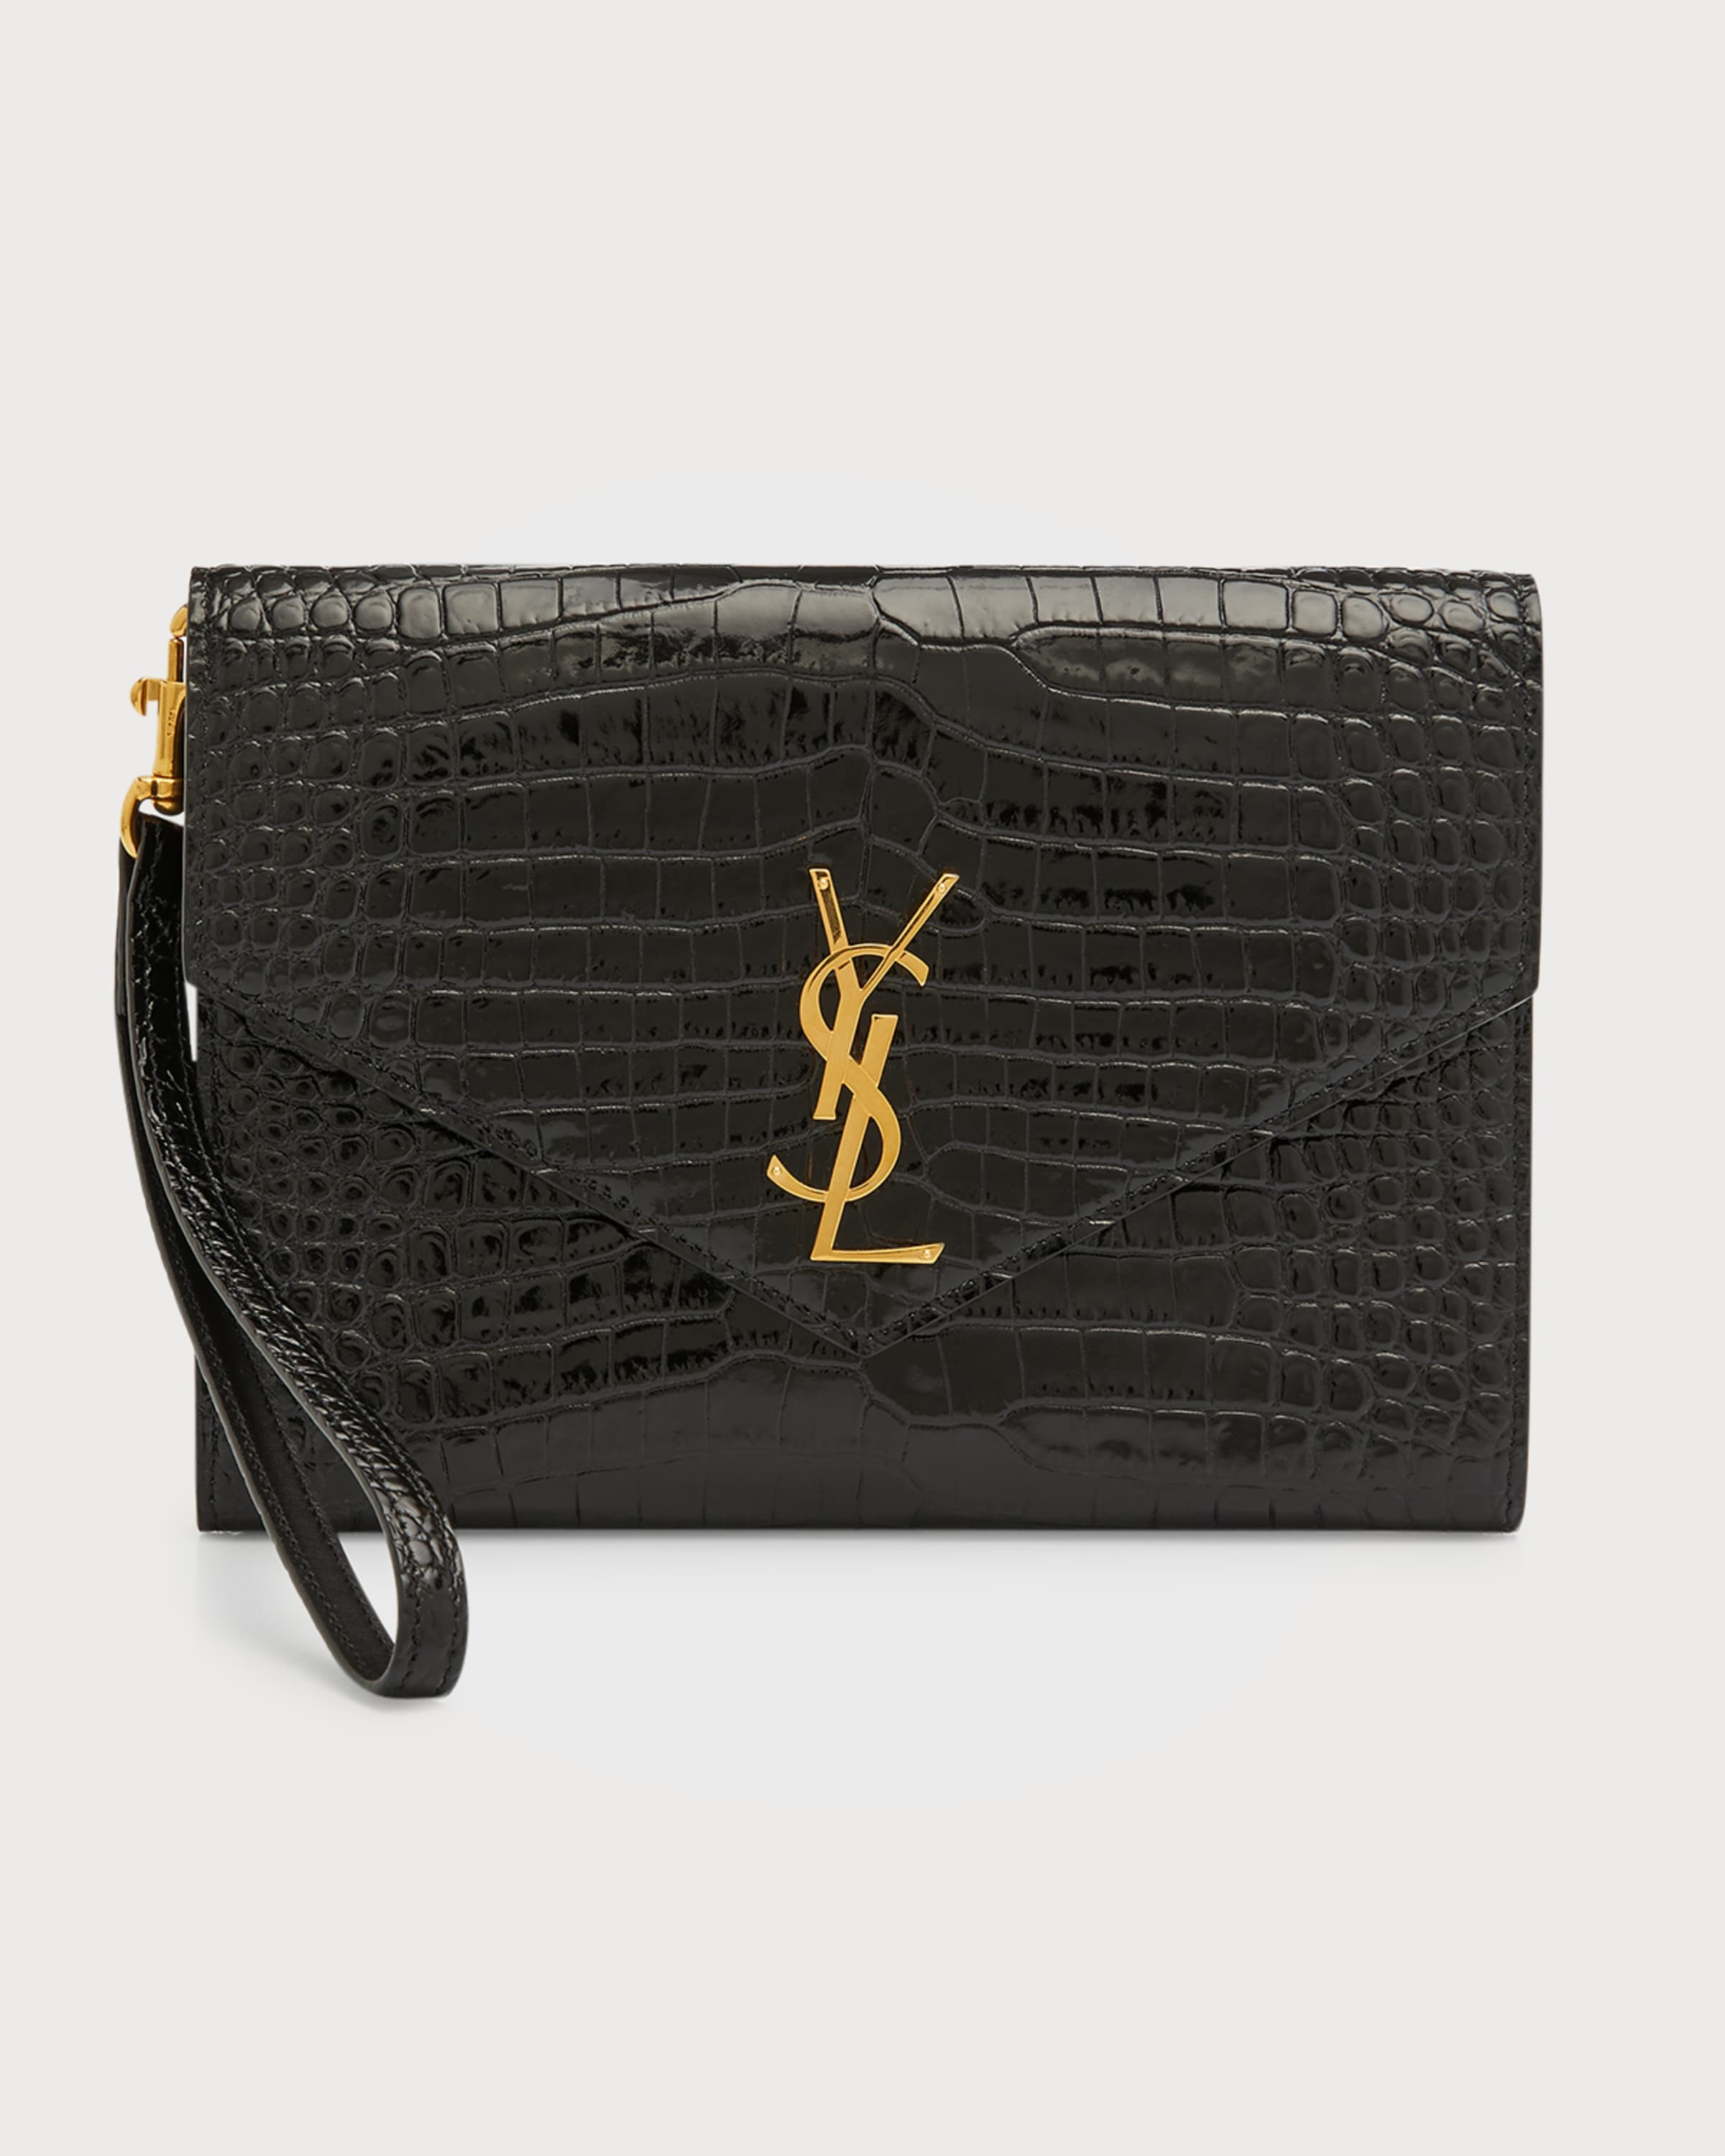 Yves Saint Laurent Vintage - Monogram Bill Pouch - Black - Leather